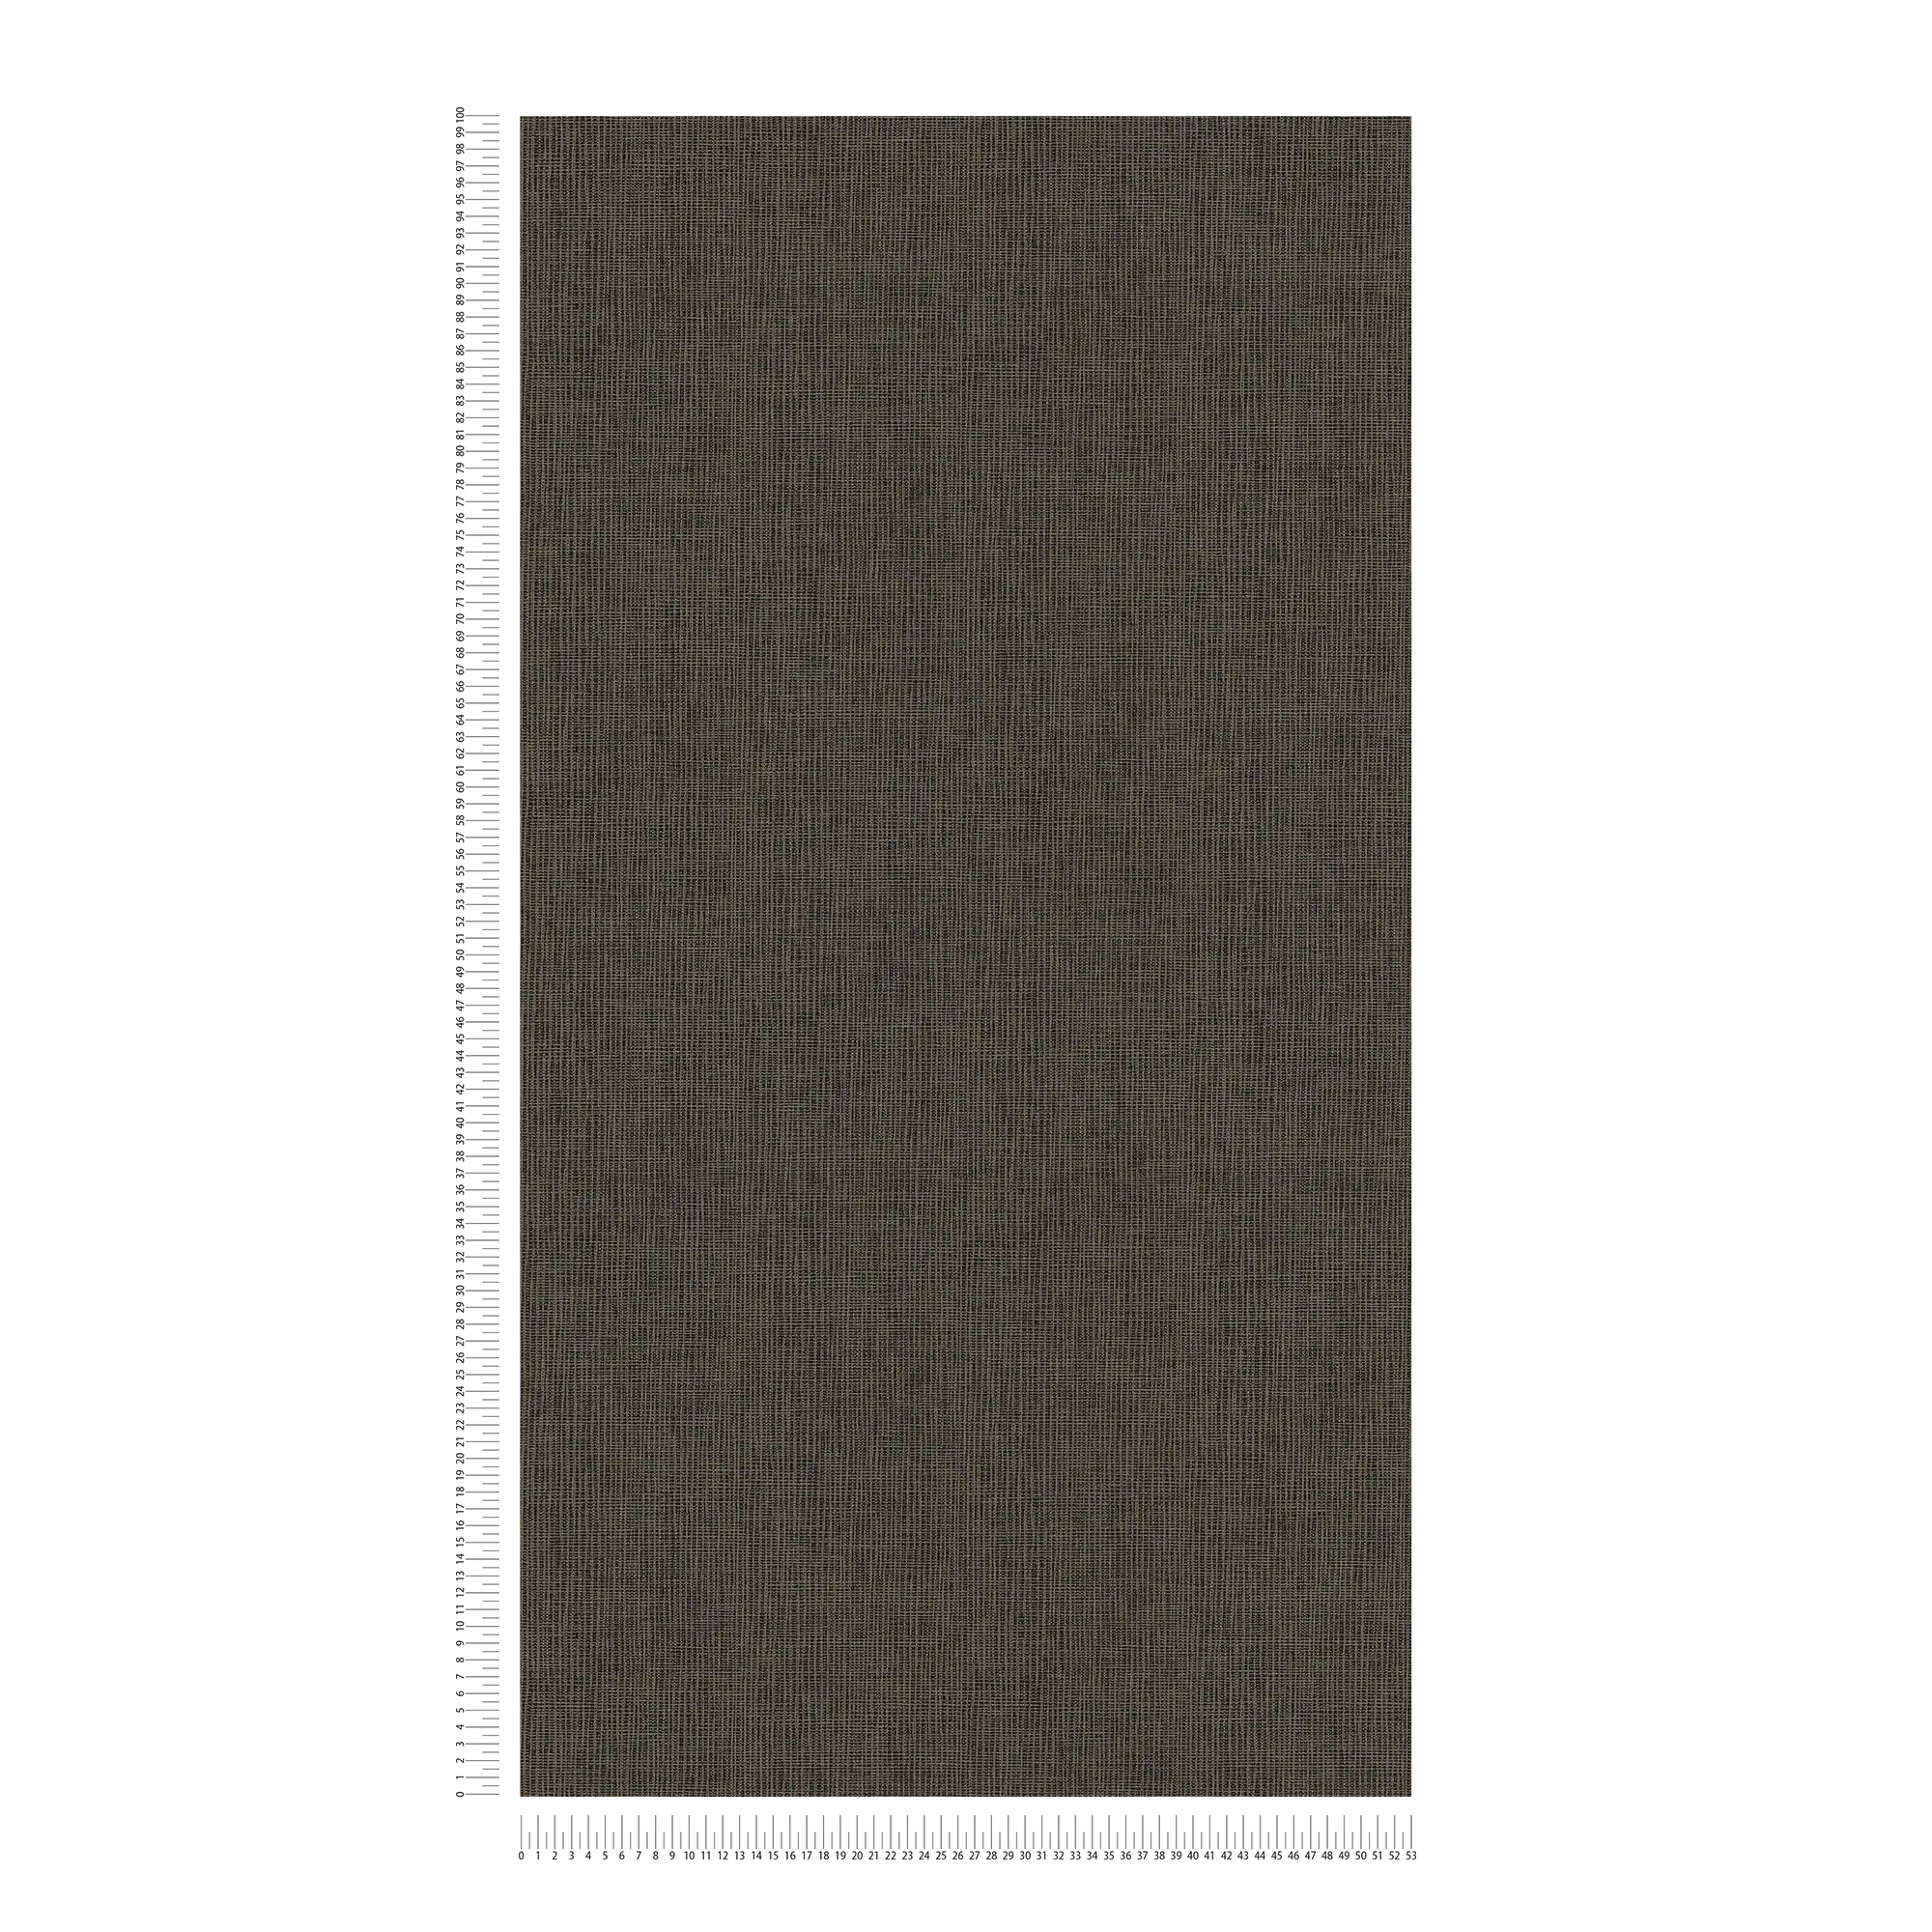             Papier peint intissé marron avec détails gris & or - bleu, gris, argent
        